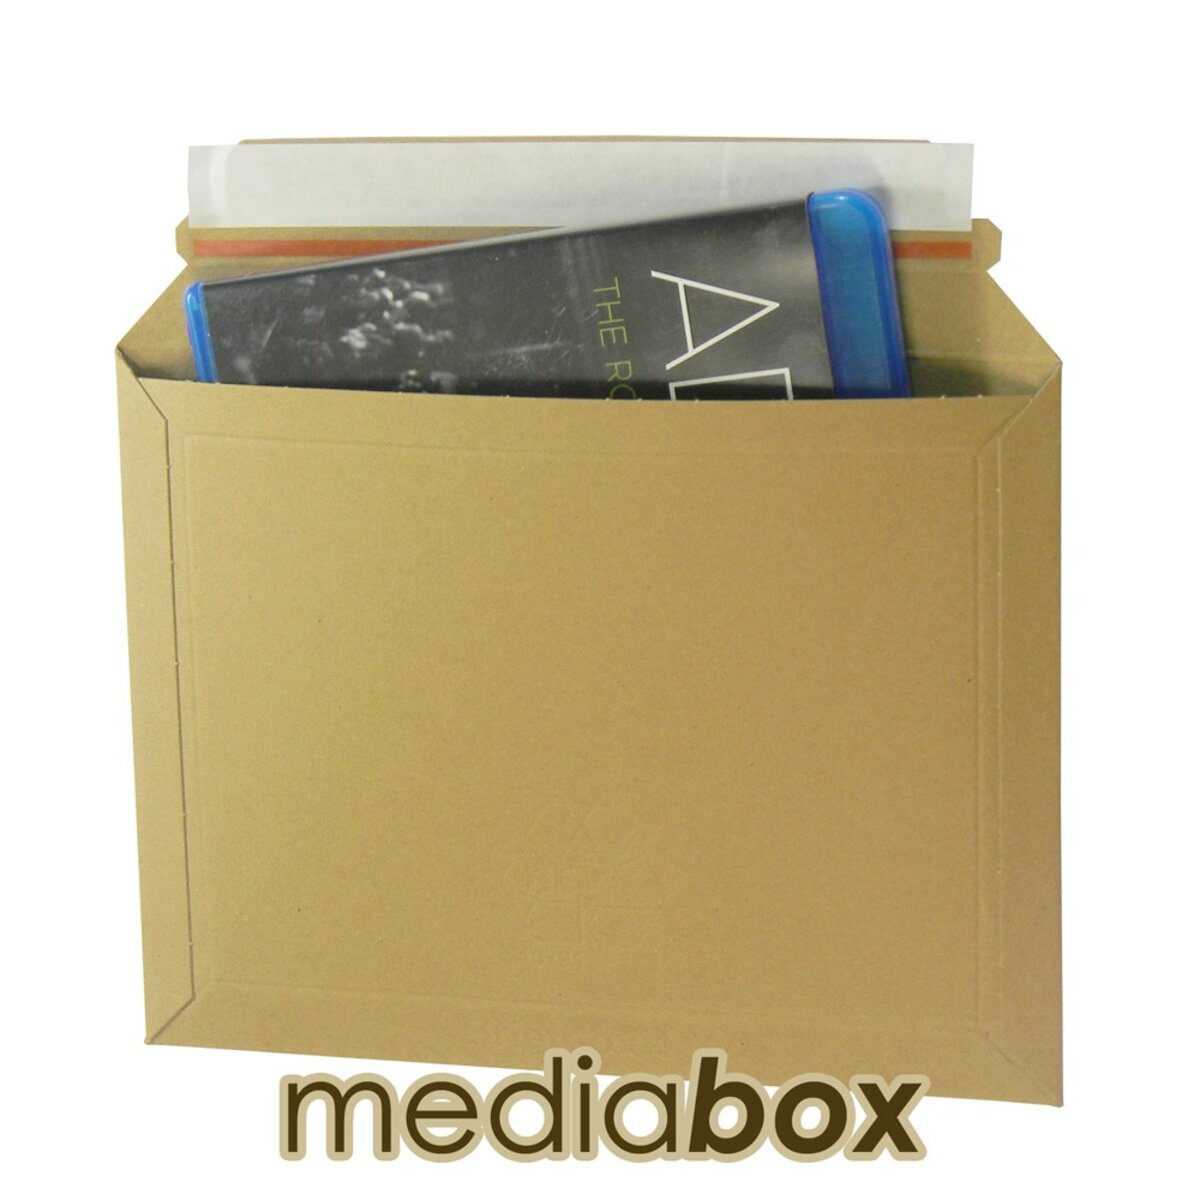 Boîte cadeau personnalisable quadrichromie en carton de taille M lettre  suivie - Boxam M lettre suivie